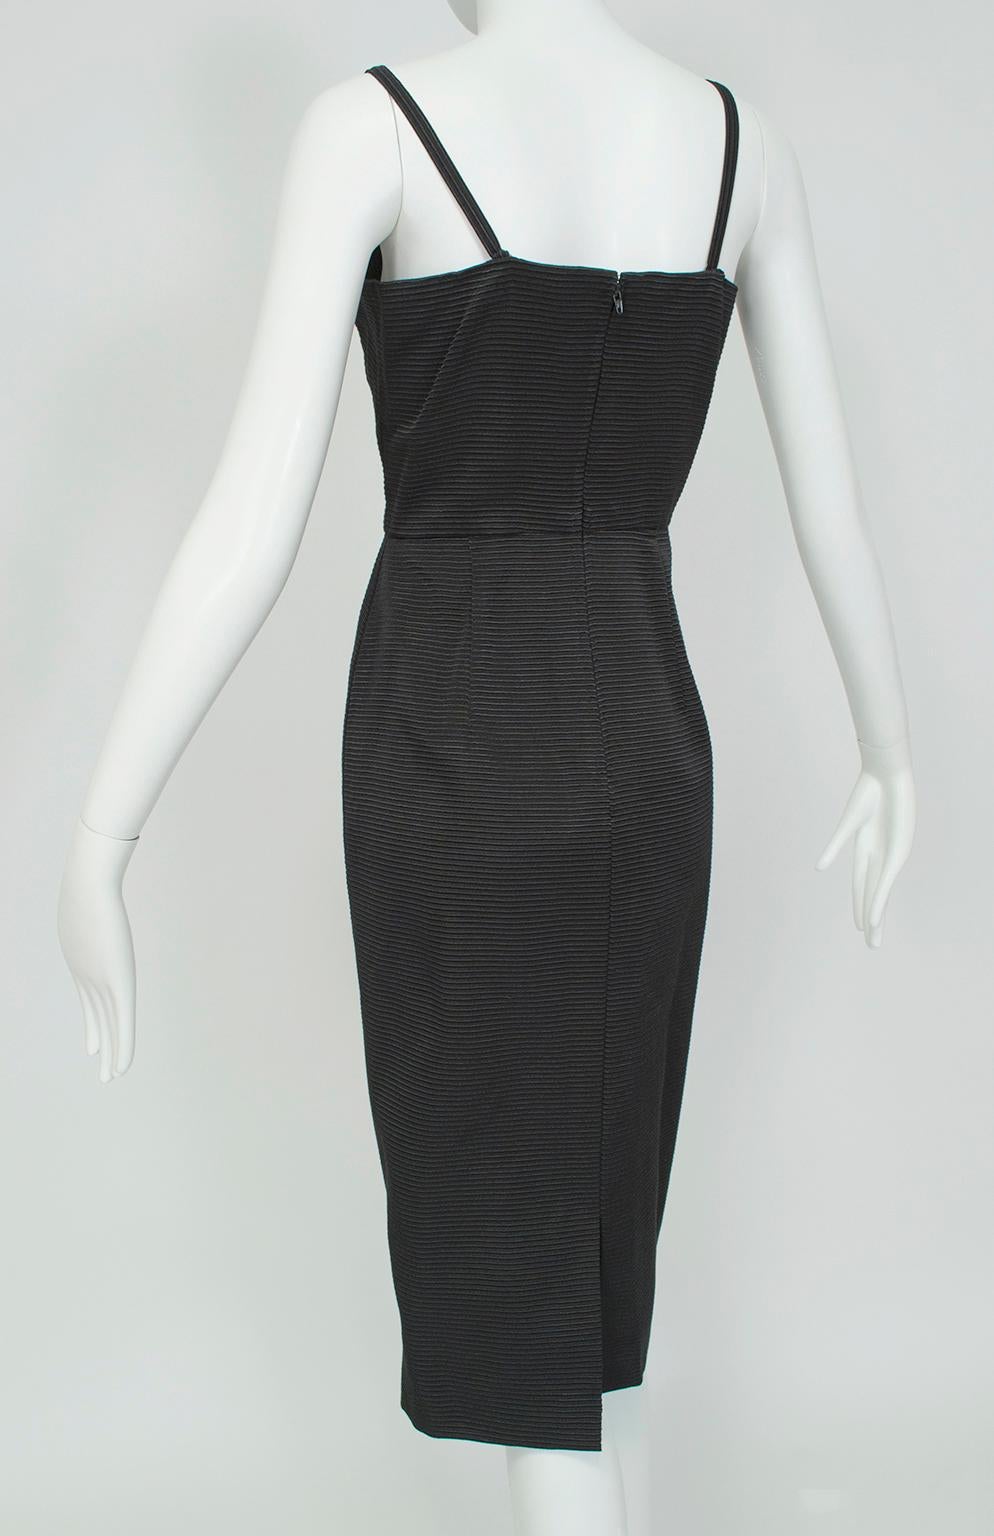 Emilio Schuberth Extravagant Black Fringe Shoulder Dress Suit - M, 1960s In Excellent Condition For Sale In Tucson, AZ